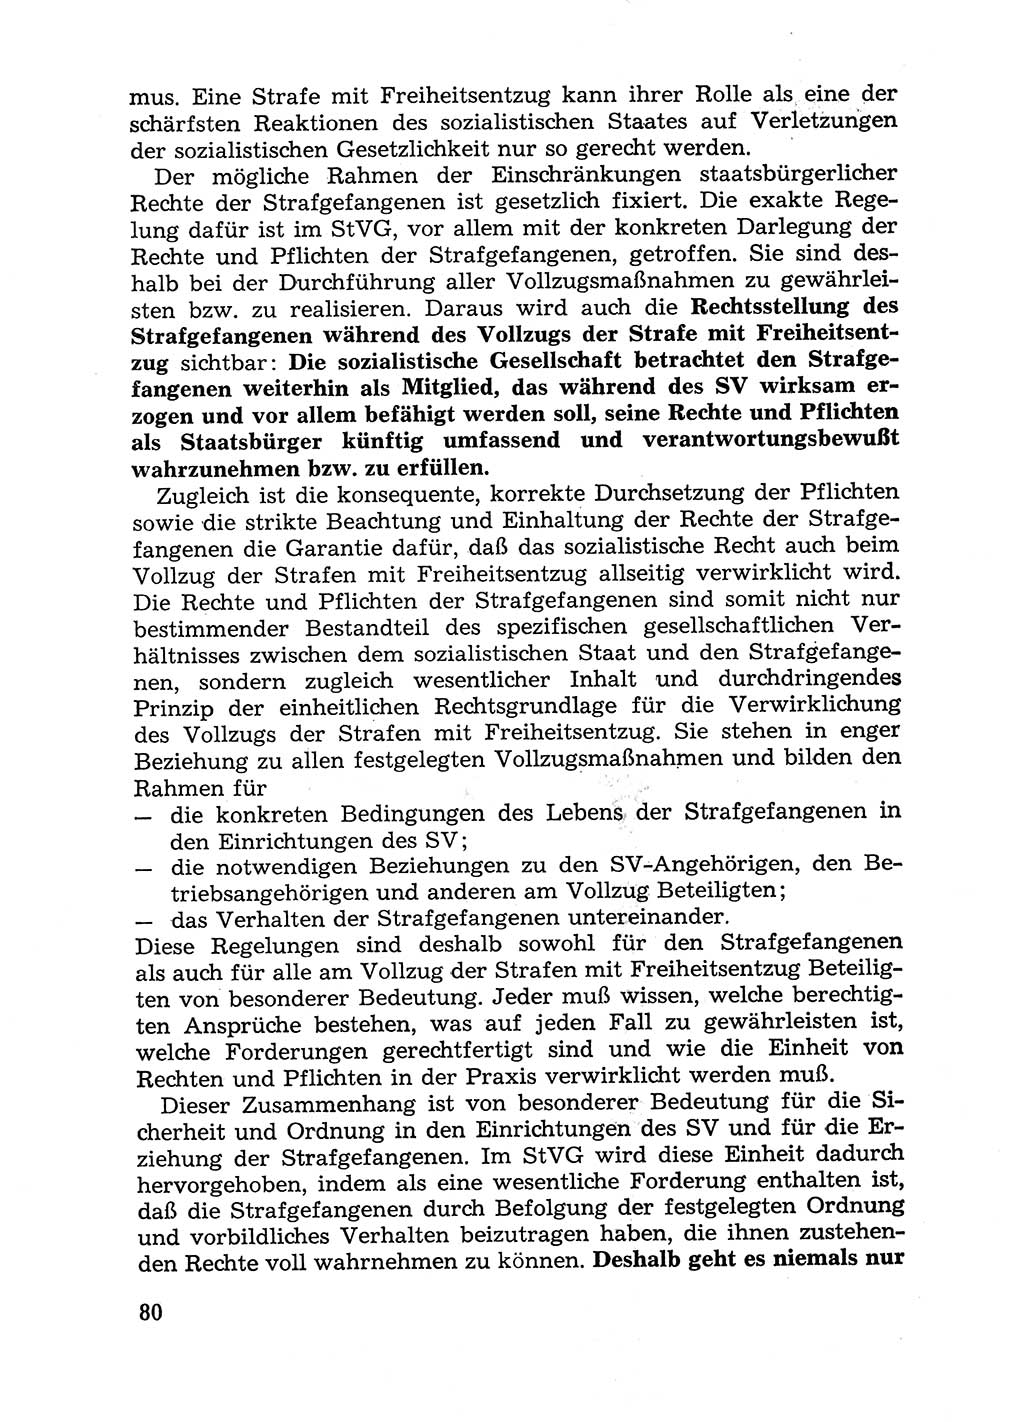 Handbuch für Betriebsangehörige, Abteilung Strafvollzug (SV) [Ministerium des Innern (MdI) Deutsche Demokratische Republik (DDR)] 1981, Seite 80 (Hb. BA Abt. SV MdI DDR 1981, S. 80)